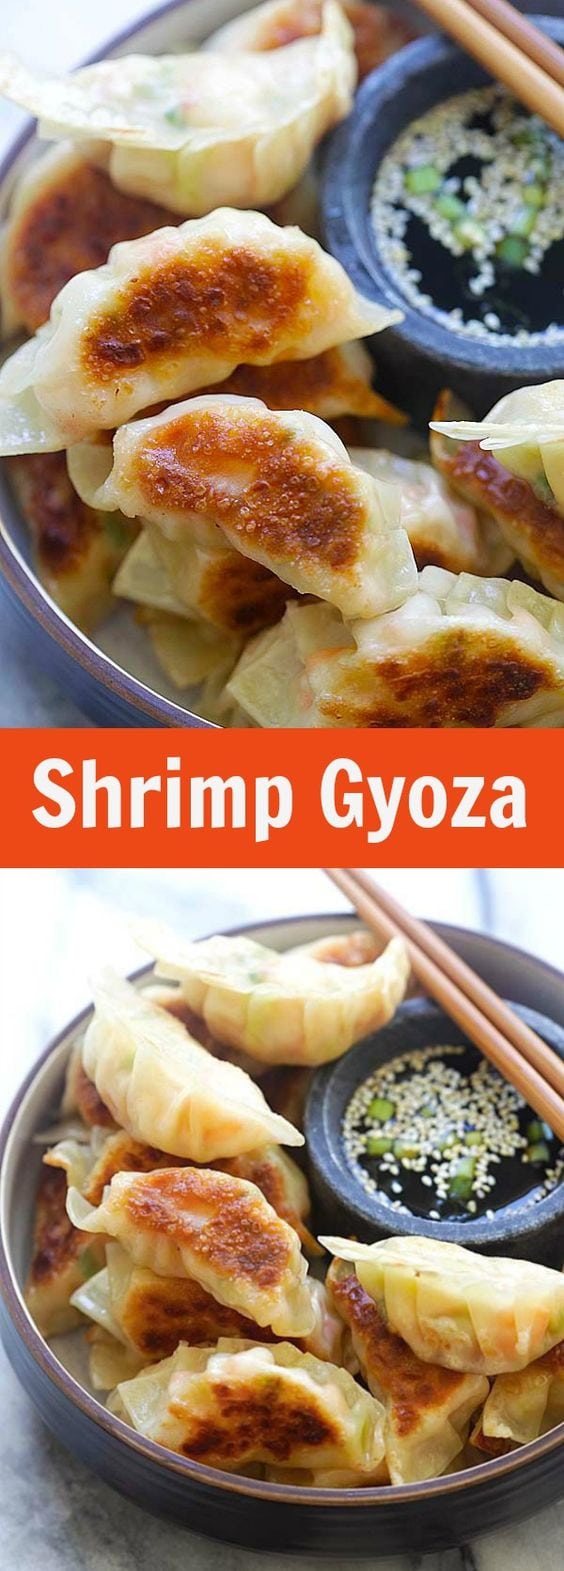 Shrimp Gyoza - étonnantes boulettes de gyoza japonaises remplies de crevettes et de chou.  Croustillant, juteux et si facile à préparer à la maison.  |  rasamalaysia.com